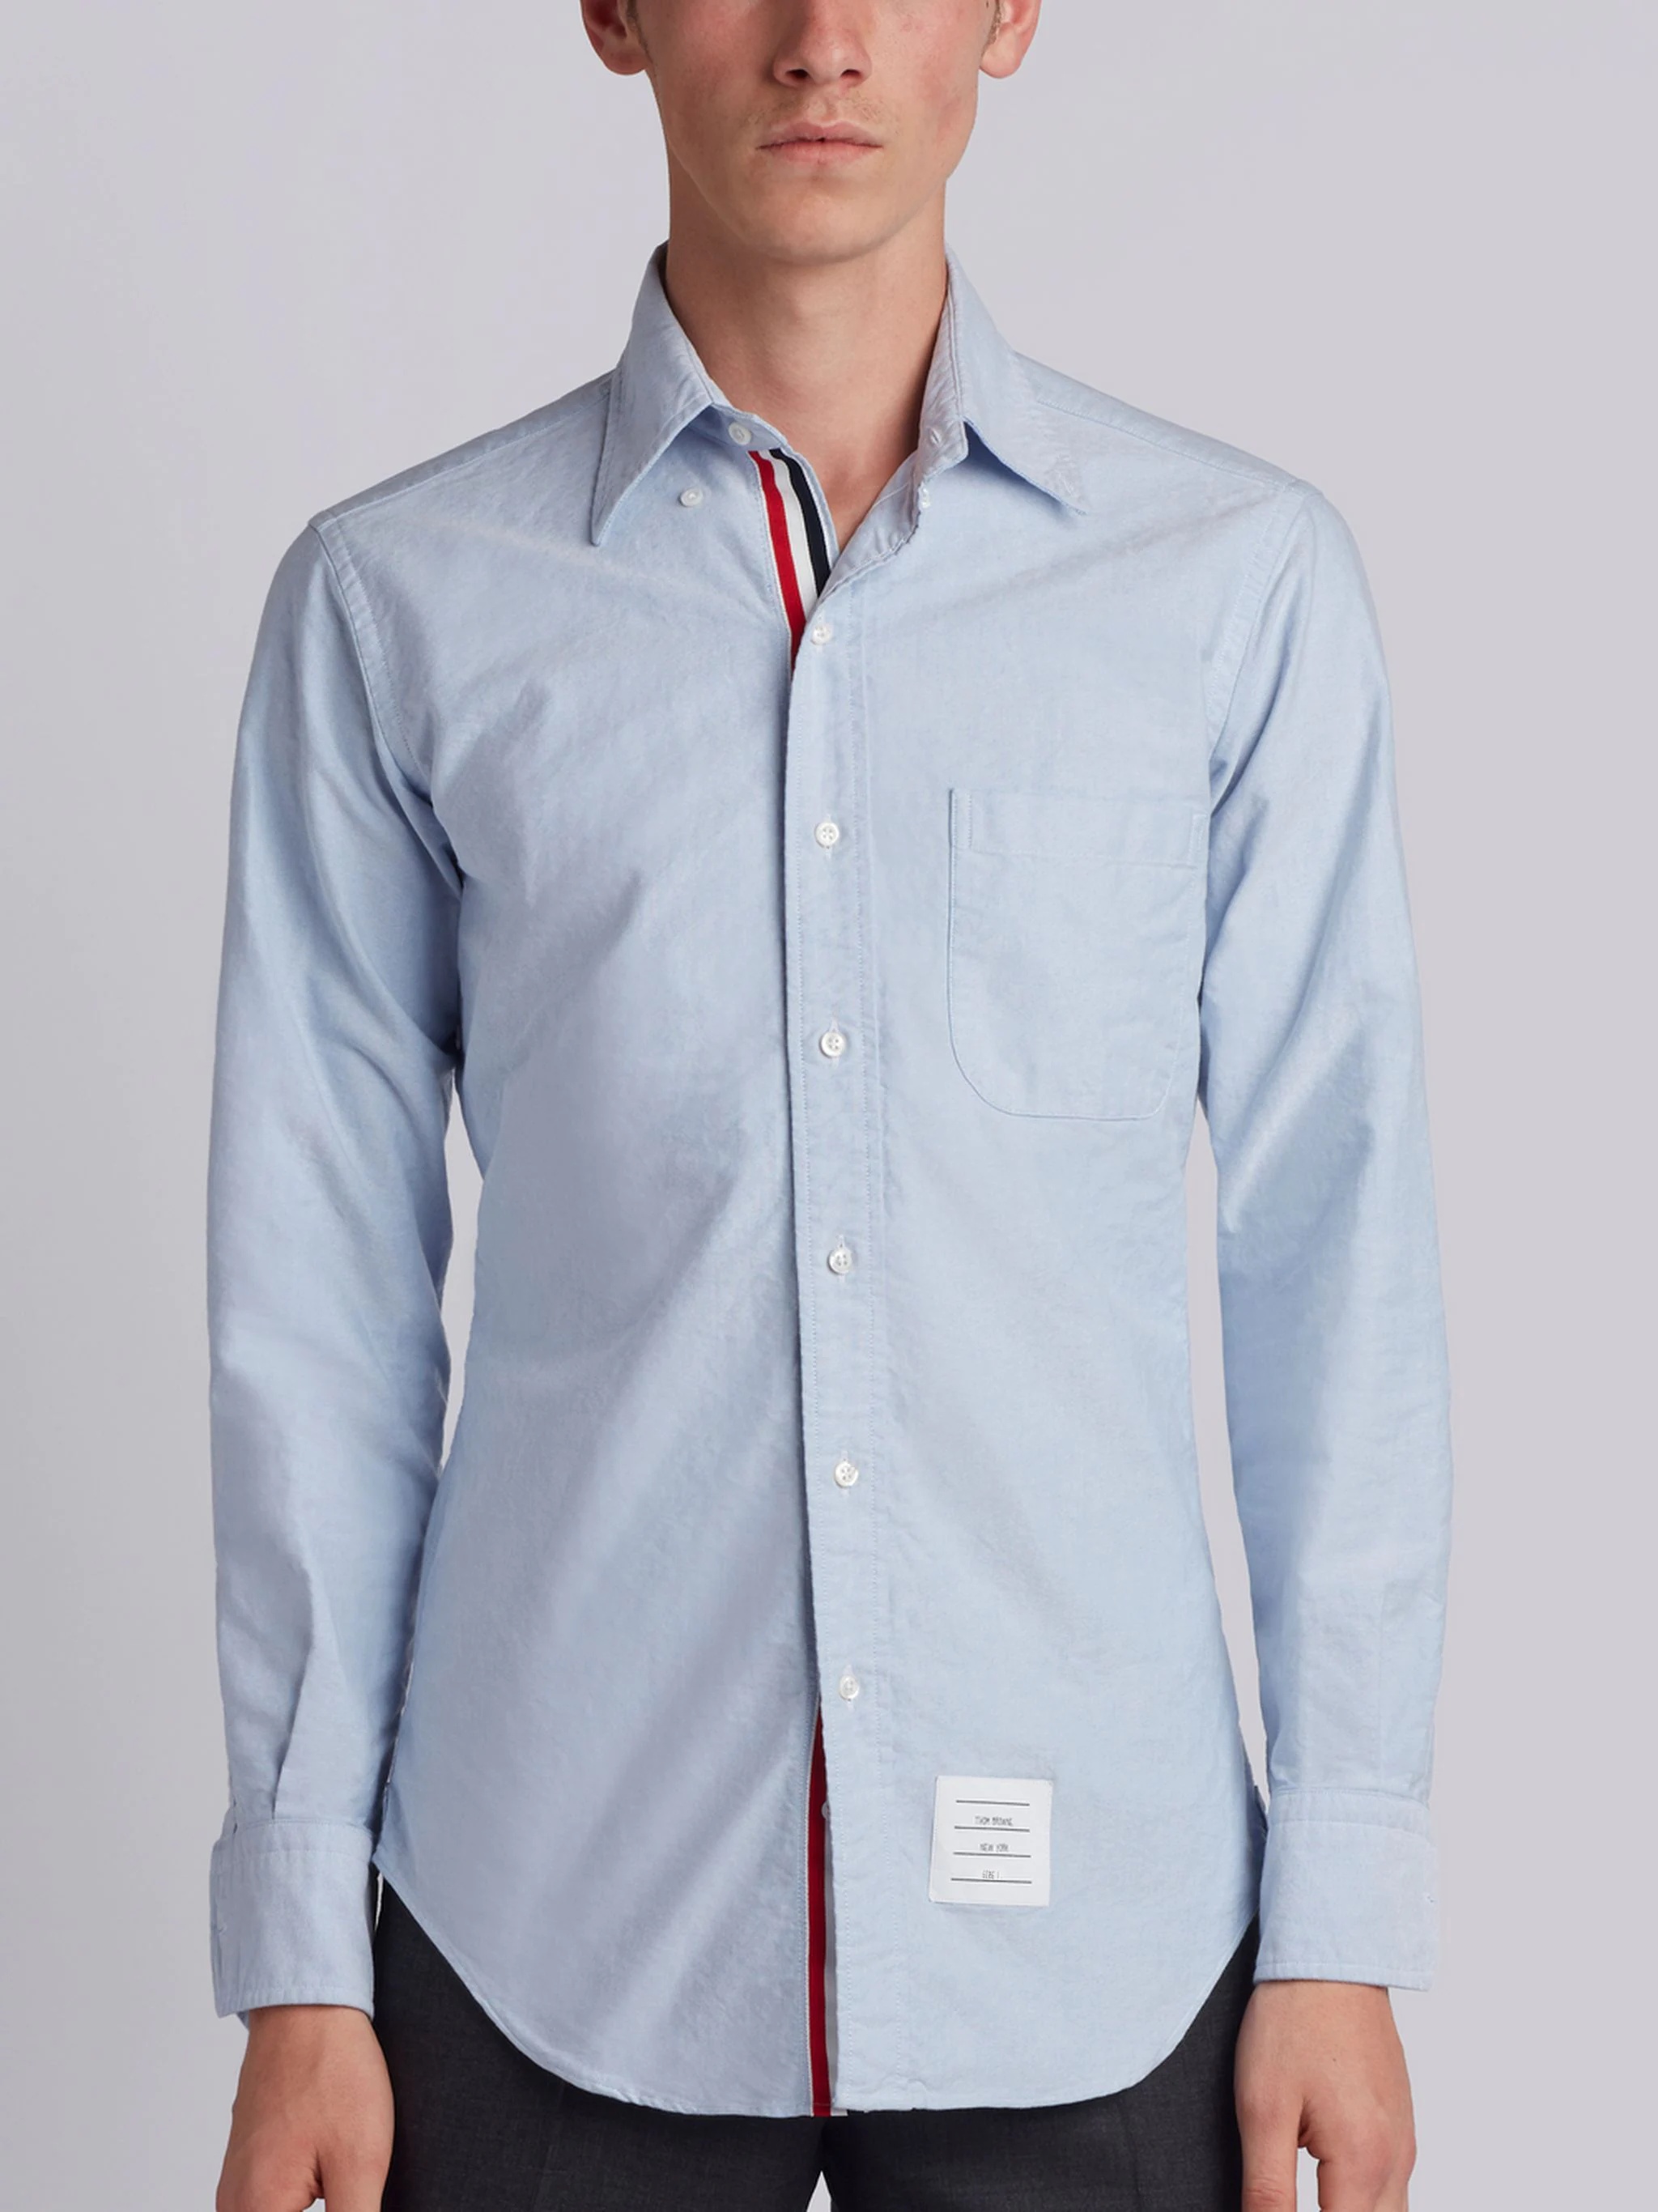 Light Blue Cotton Oxford Grosgrain Placket Shirt - 2